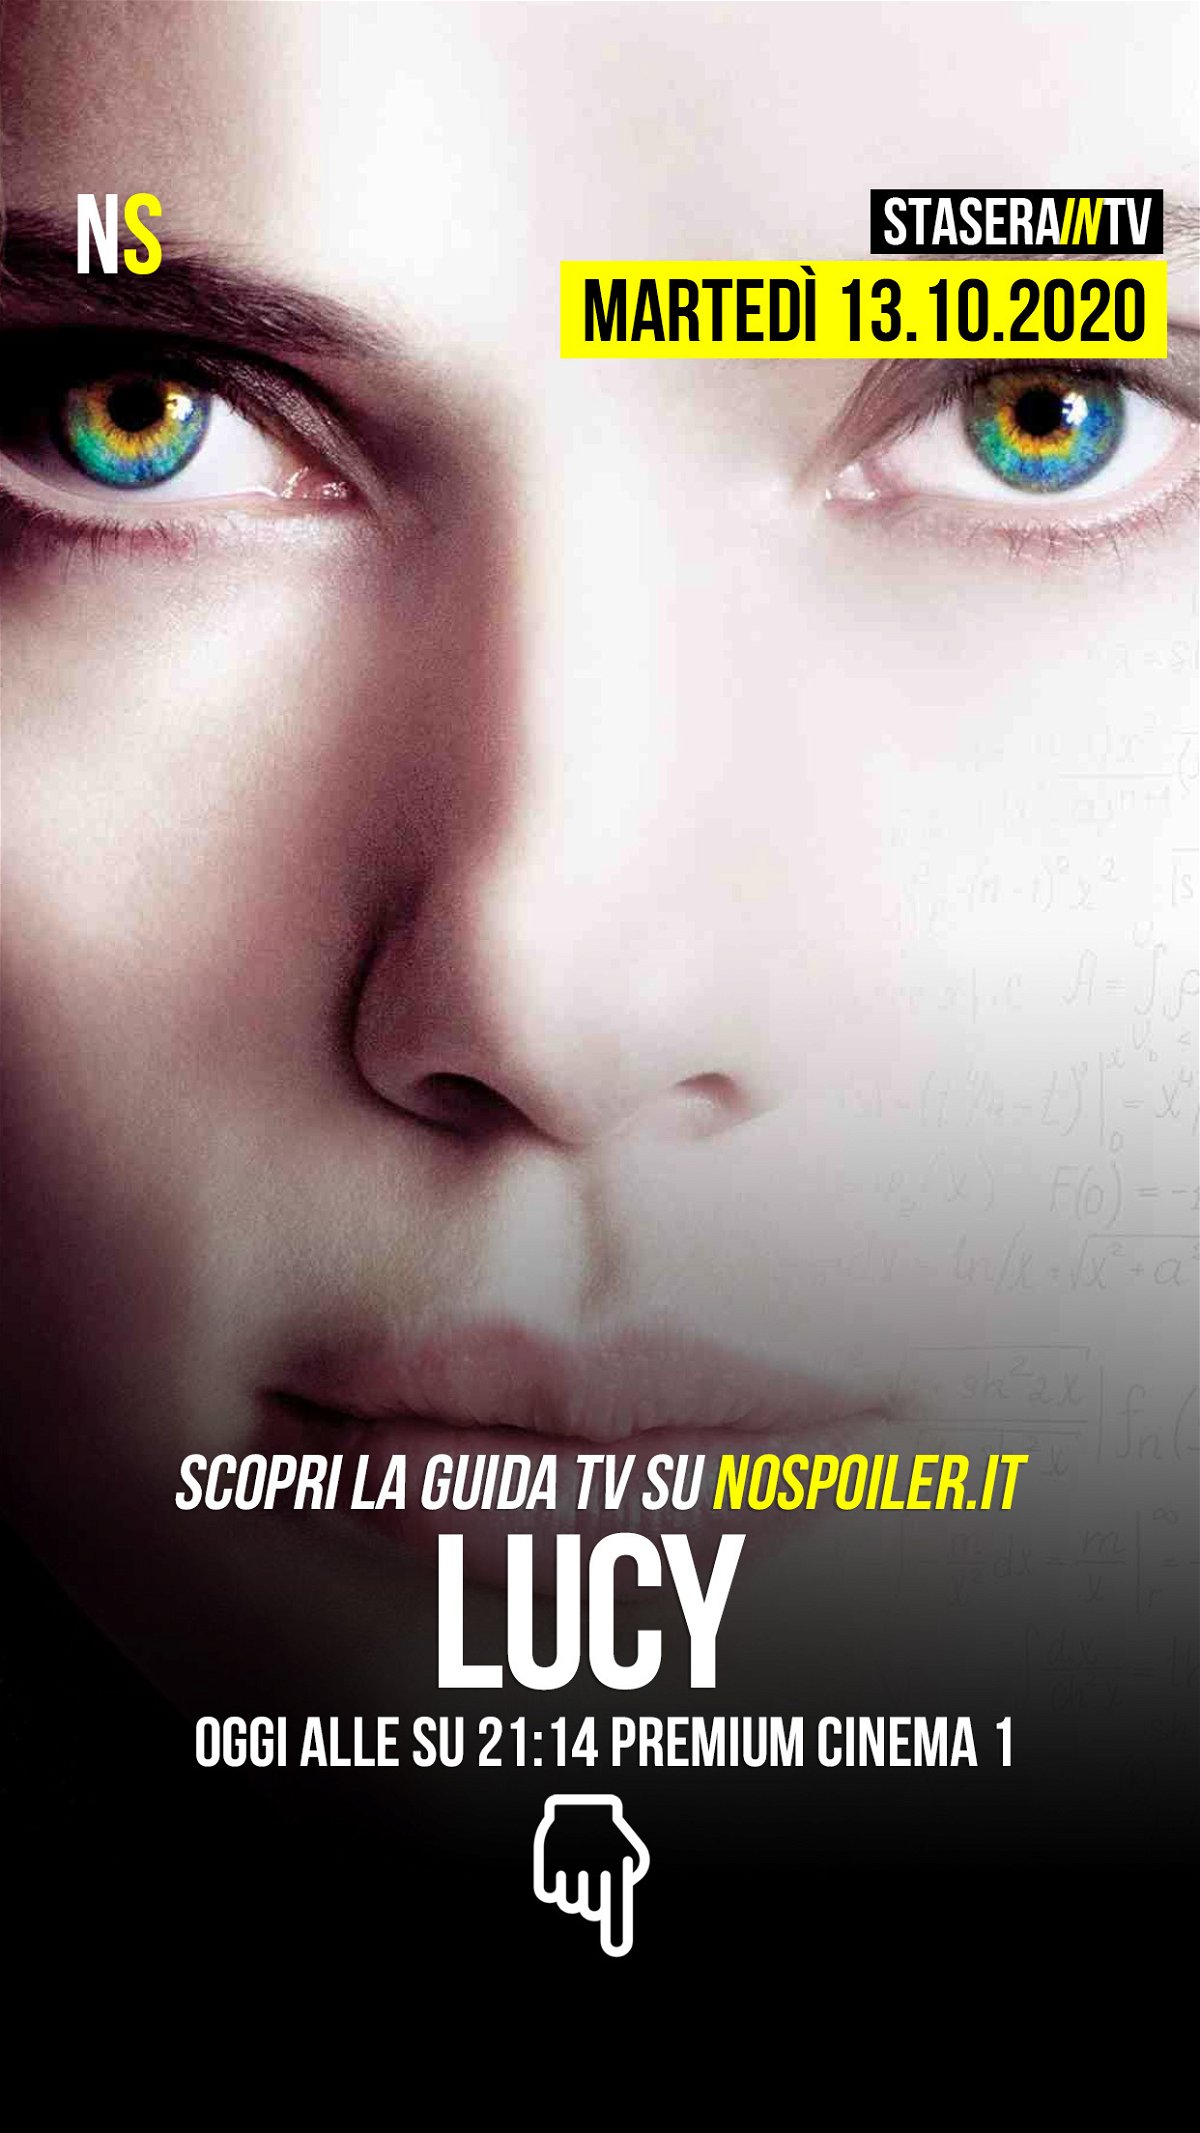 Stasera su Premium Cinema 1 il film Lucy